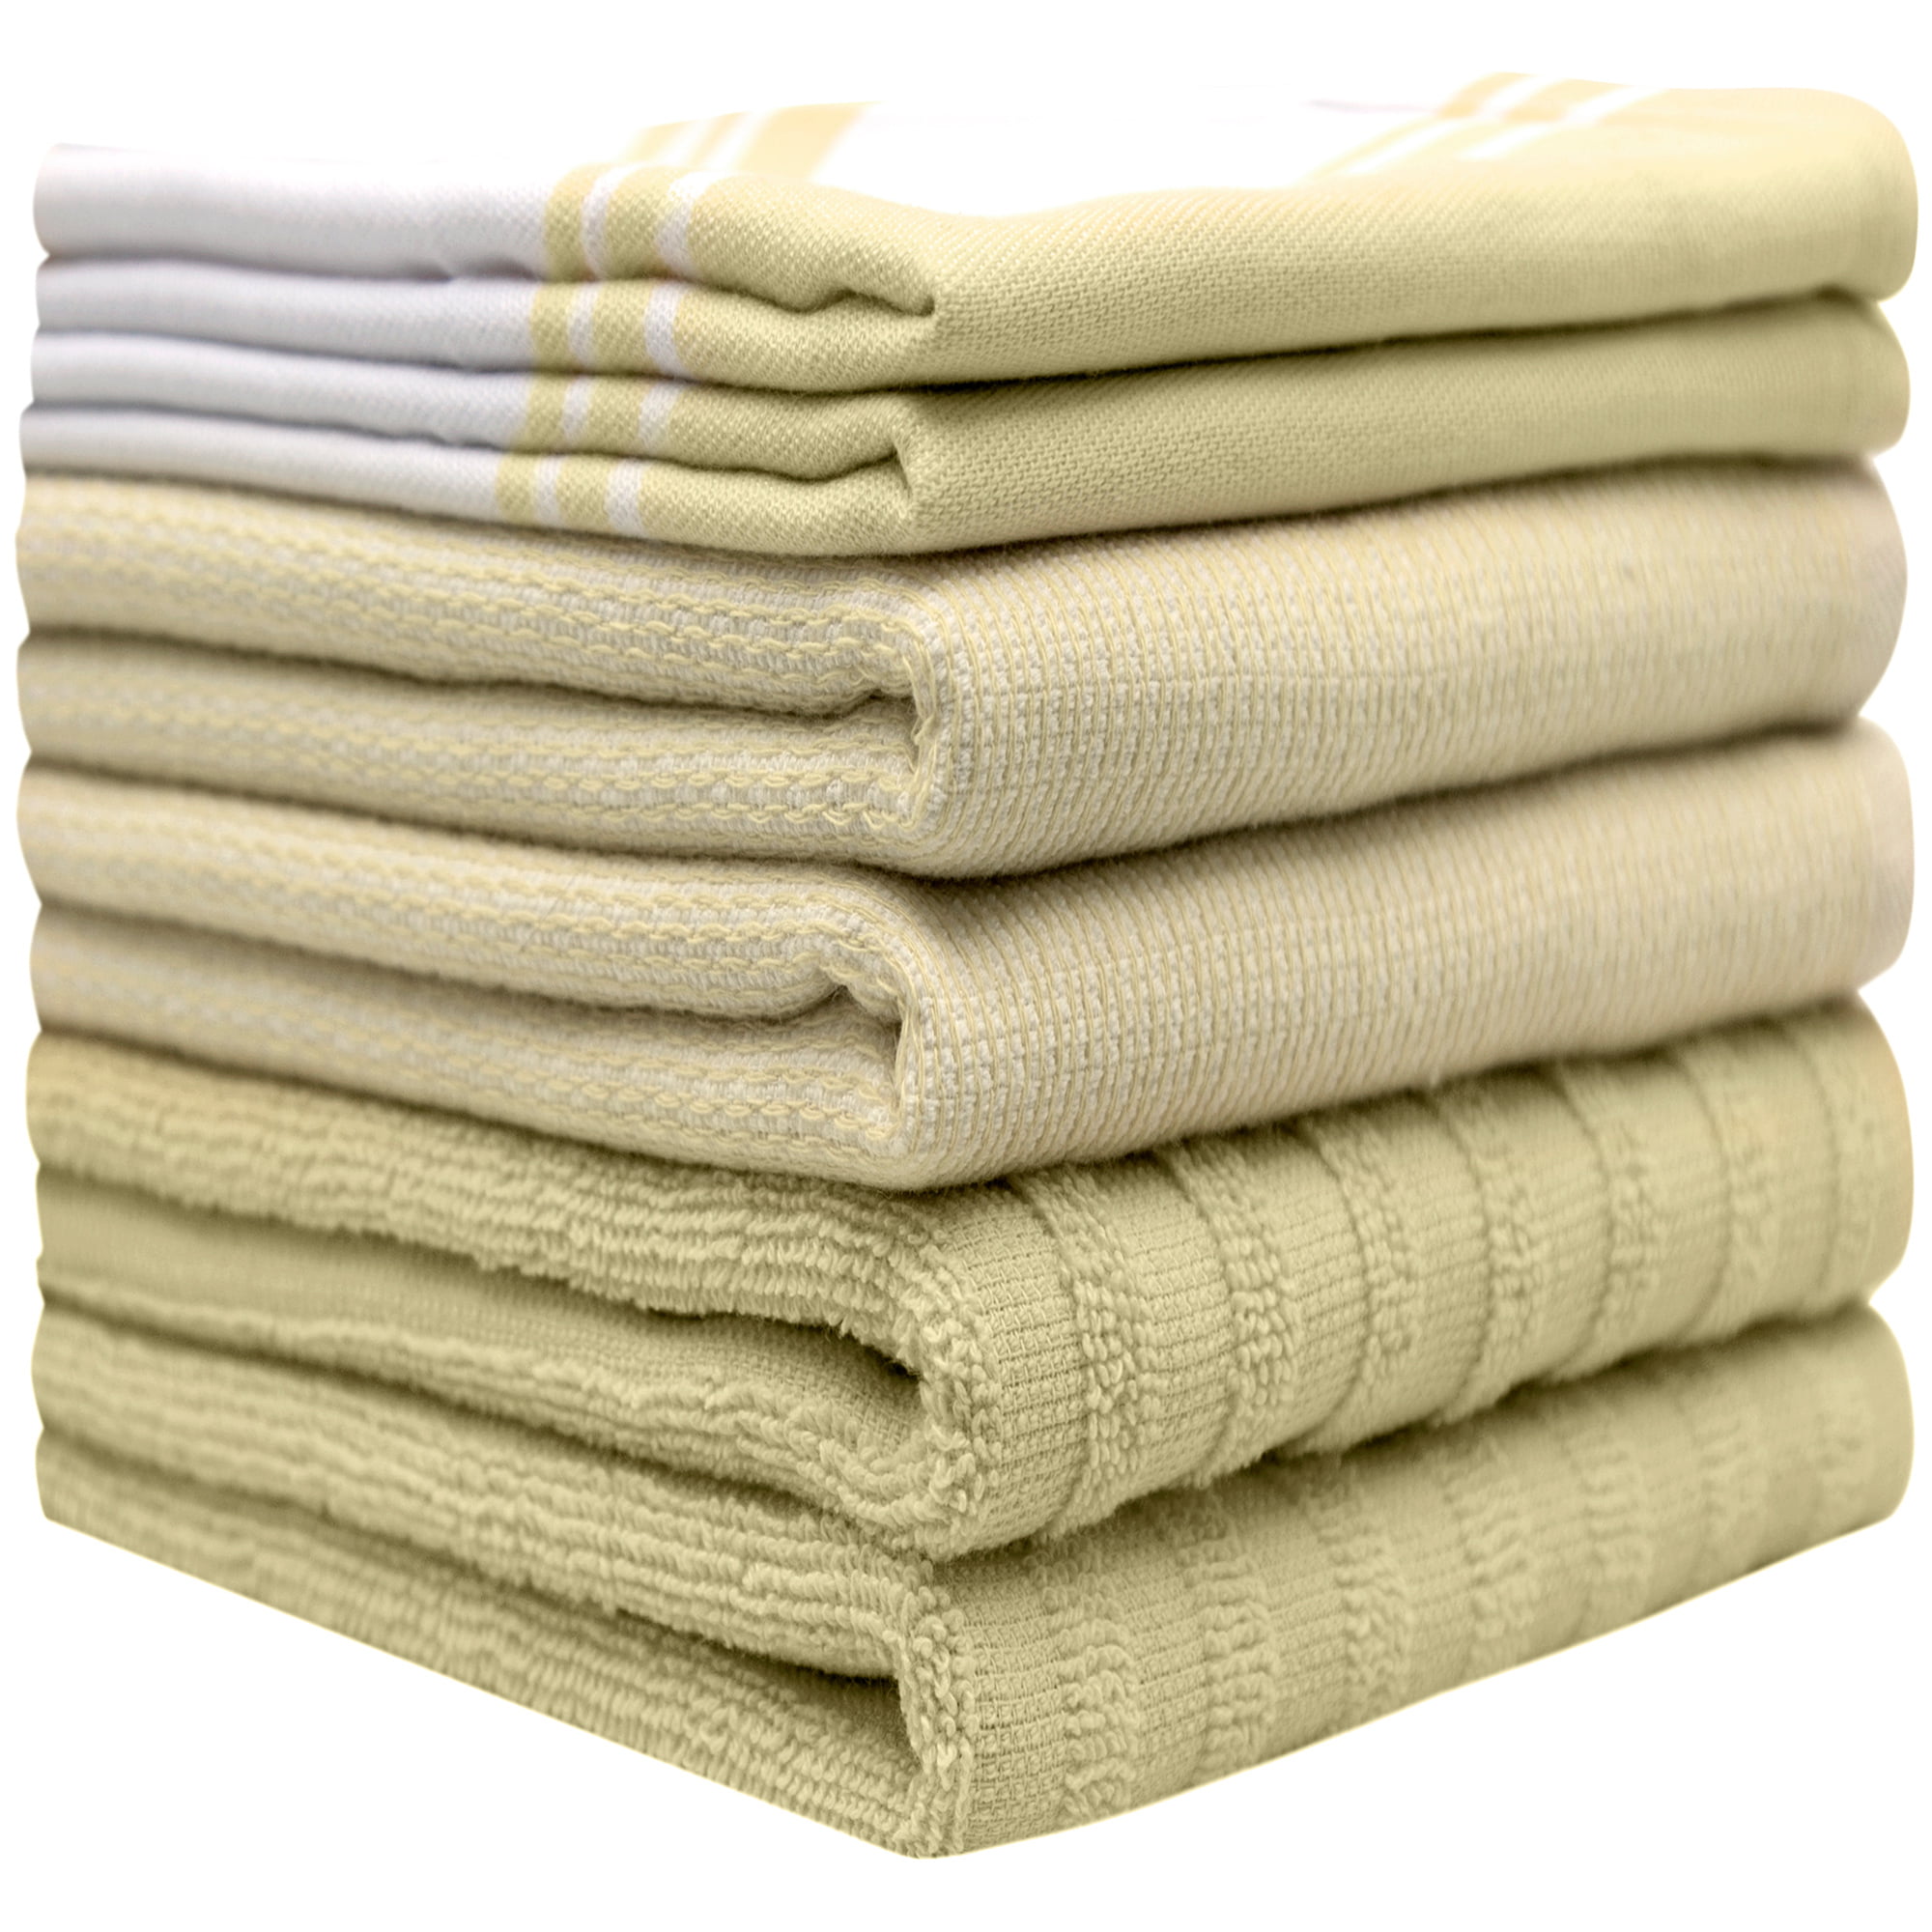 Bumble Towels Premium Kitchen Towels (16”x 28”, 8 Piece) Cotton Kitchen  Hand Towels Striped 420 GSM Blue